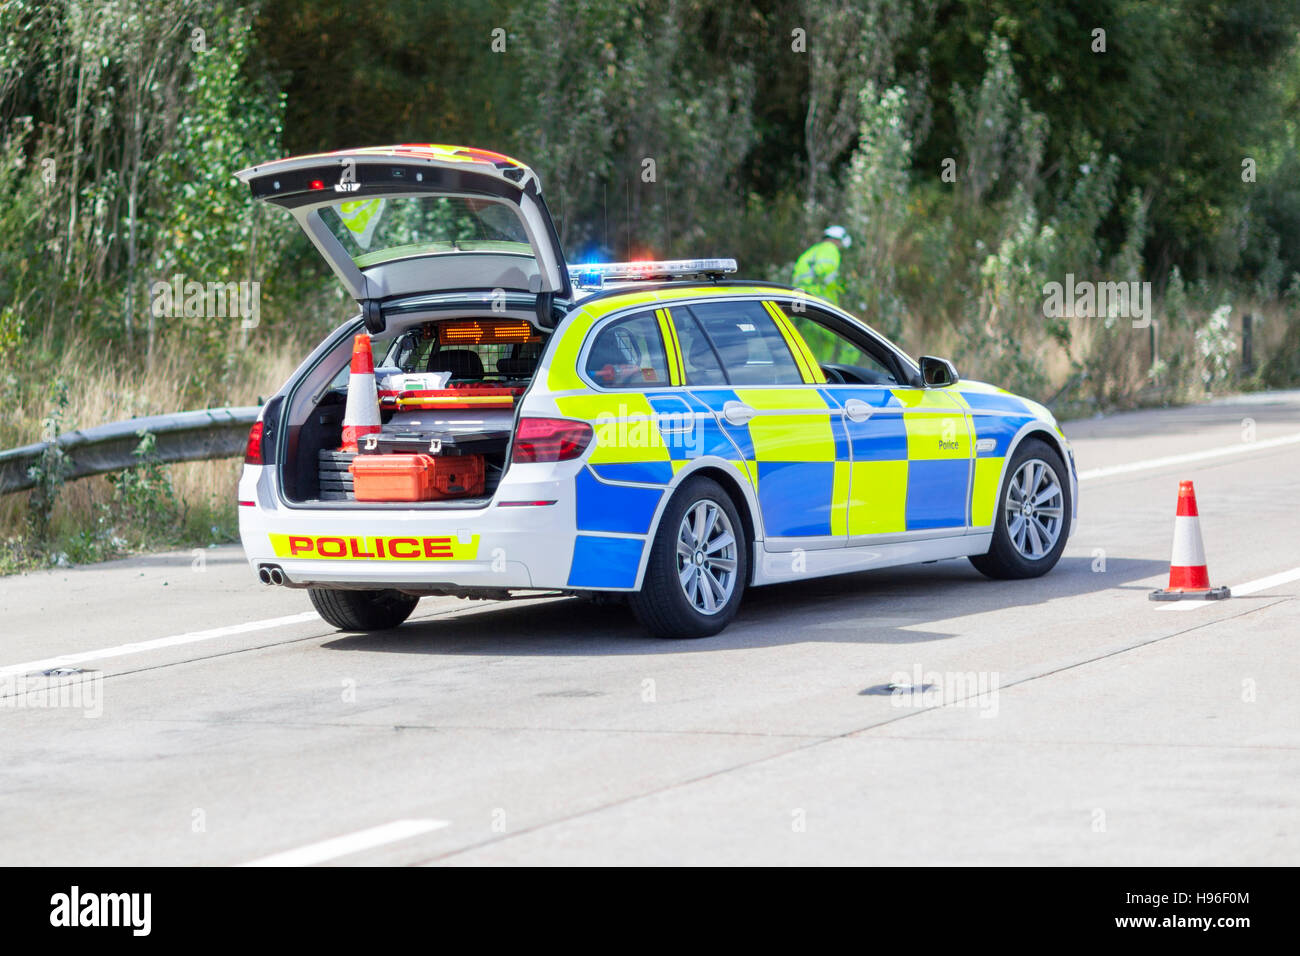 Britische Polizei-Auto in Großbritannien Autobahn Unfall oder Verbrechen-Szene Stockfoto